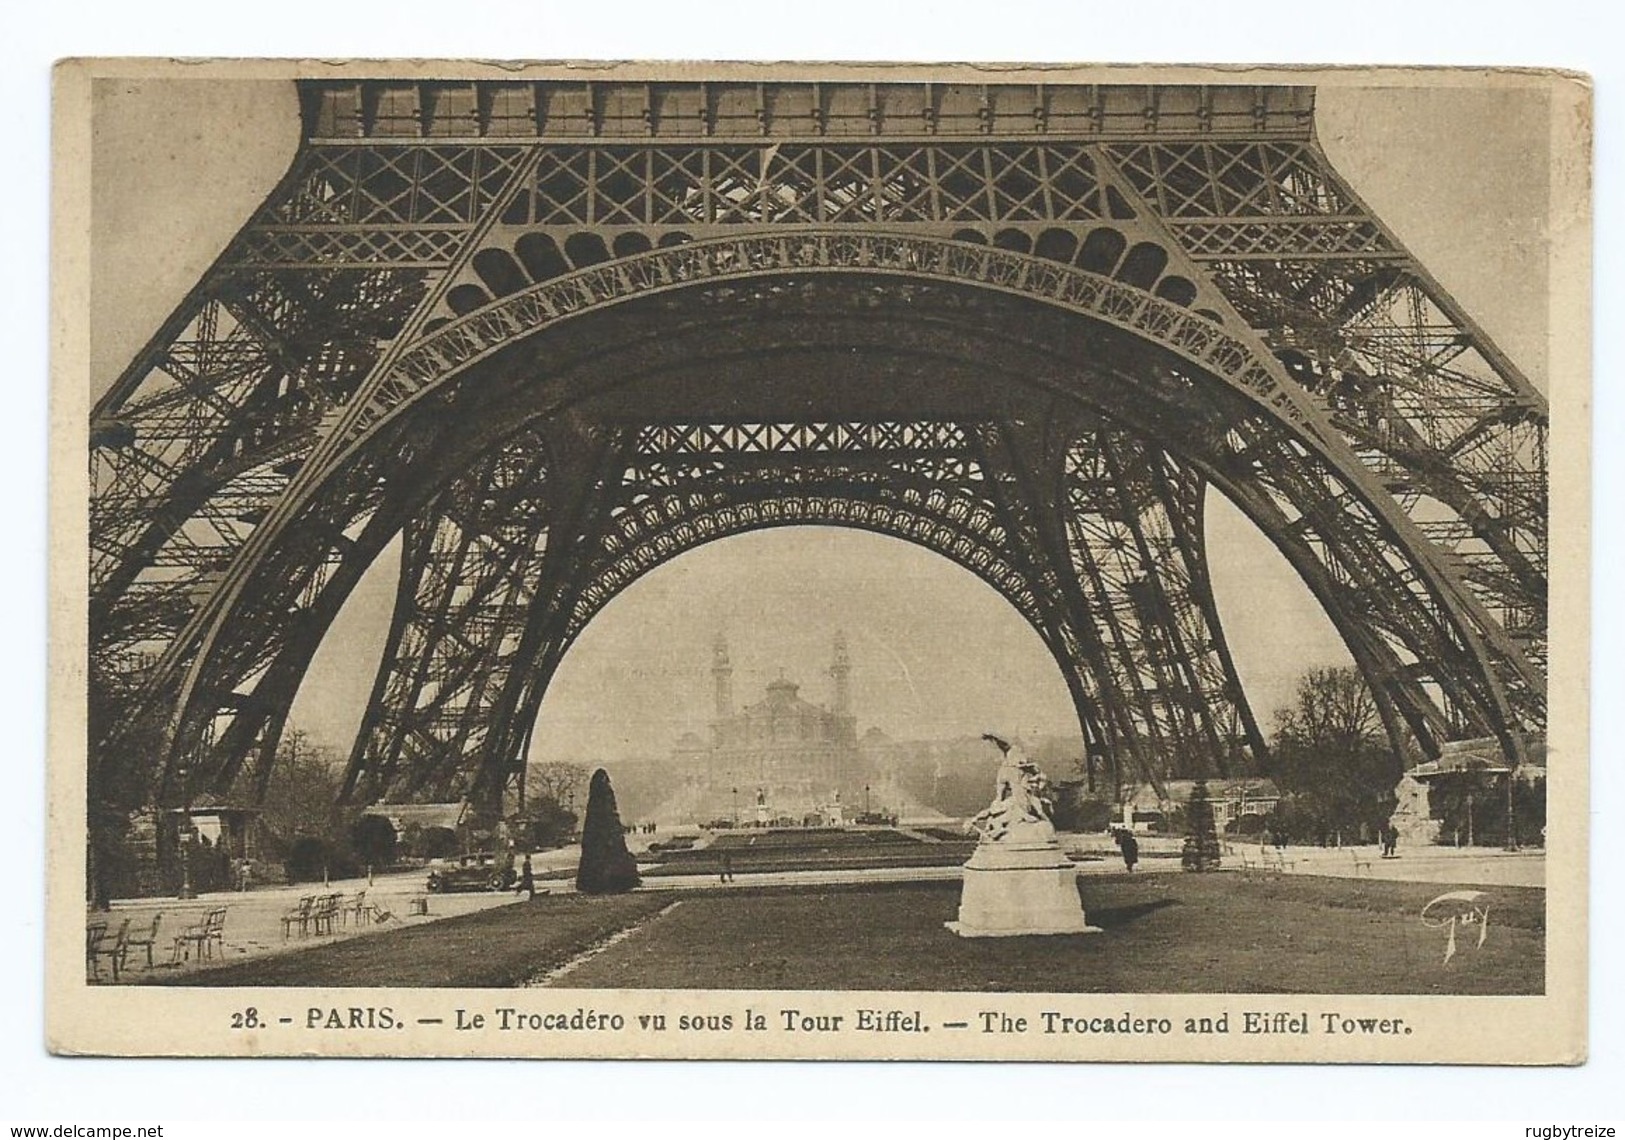 2272  Lot de 13 Cartes PARIS Trocadéro Louvre Tour Eiffel Statue Liberté Bartholdi Sacré Coeur Madeleine ideal revendeur